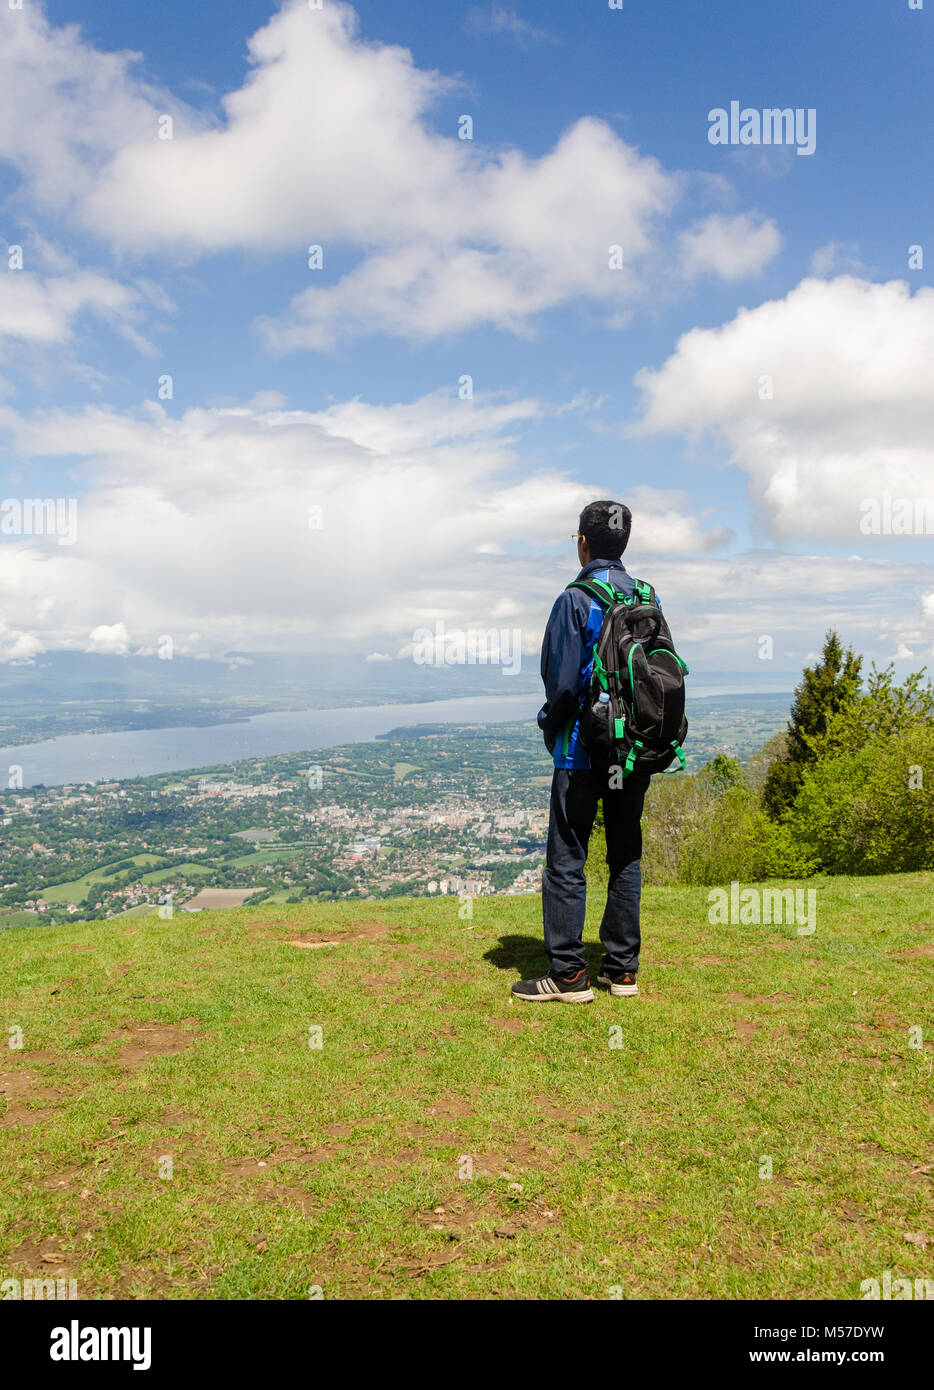 Vue arrière de jeunes adultes en garçon avec sac à dos, sur la ville de Genève, du Mont Salève, France. Banque D'Images